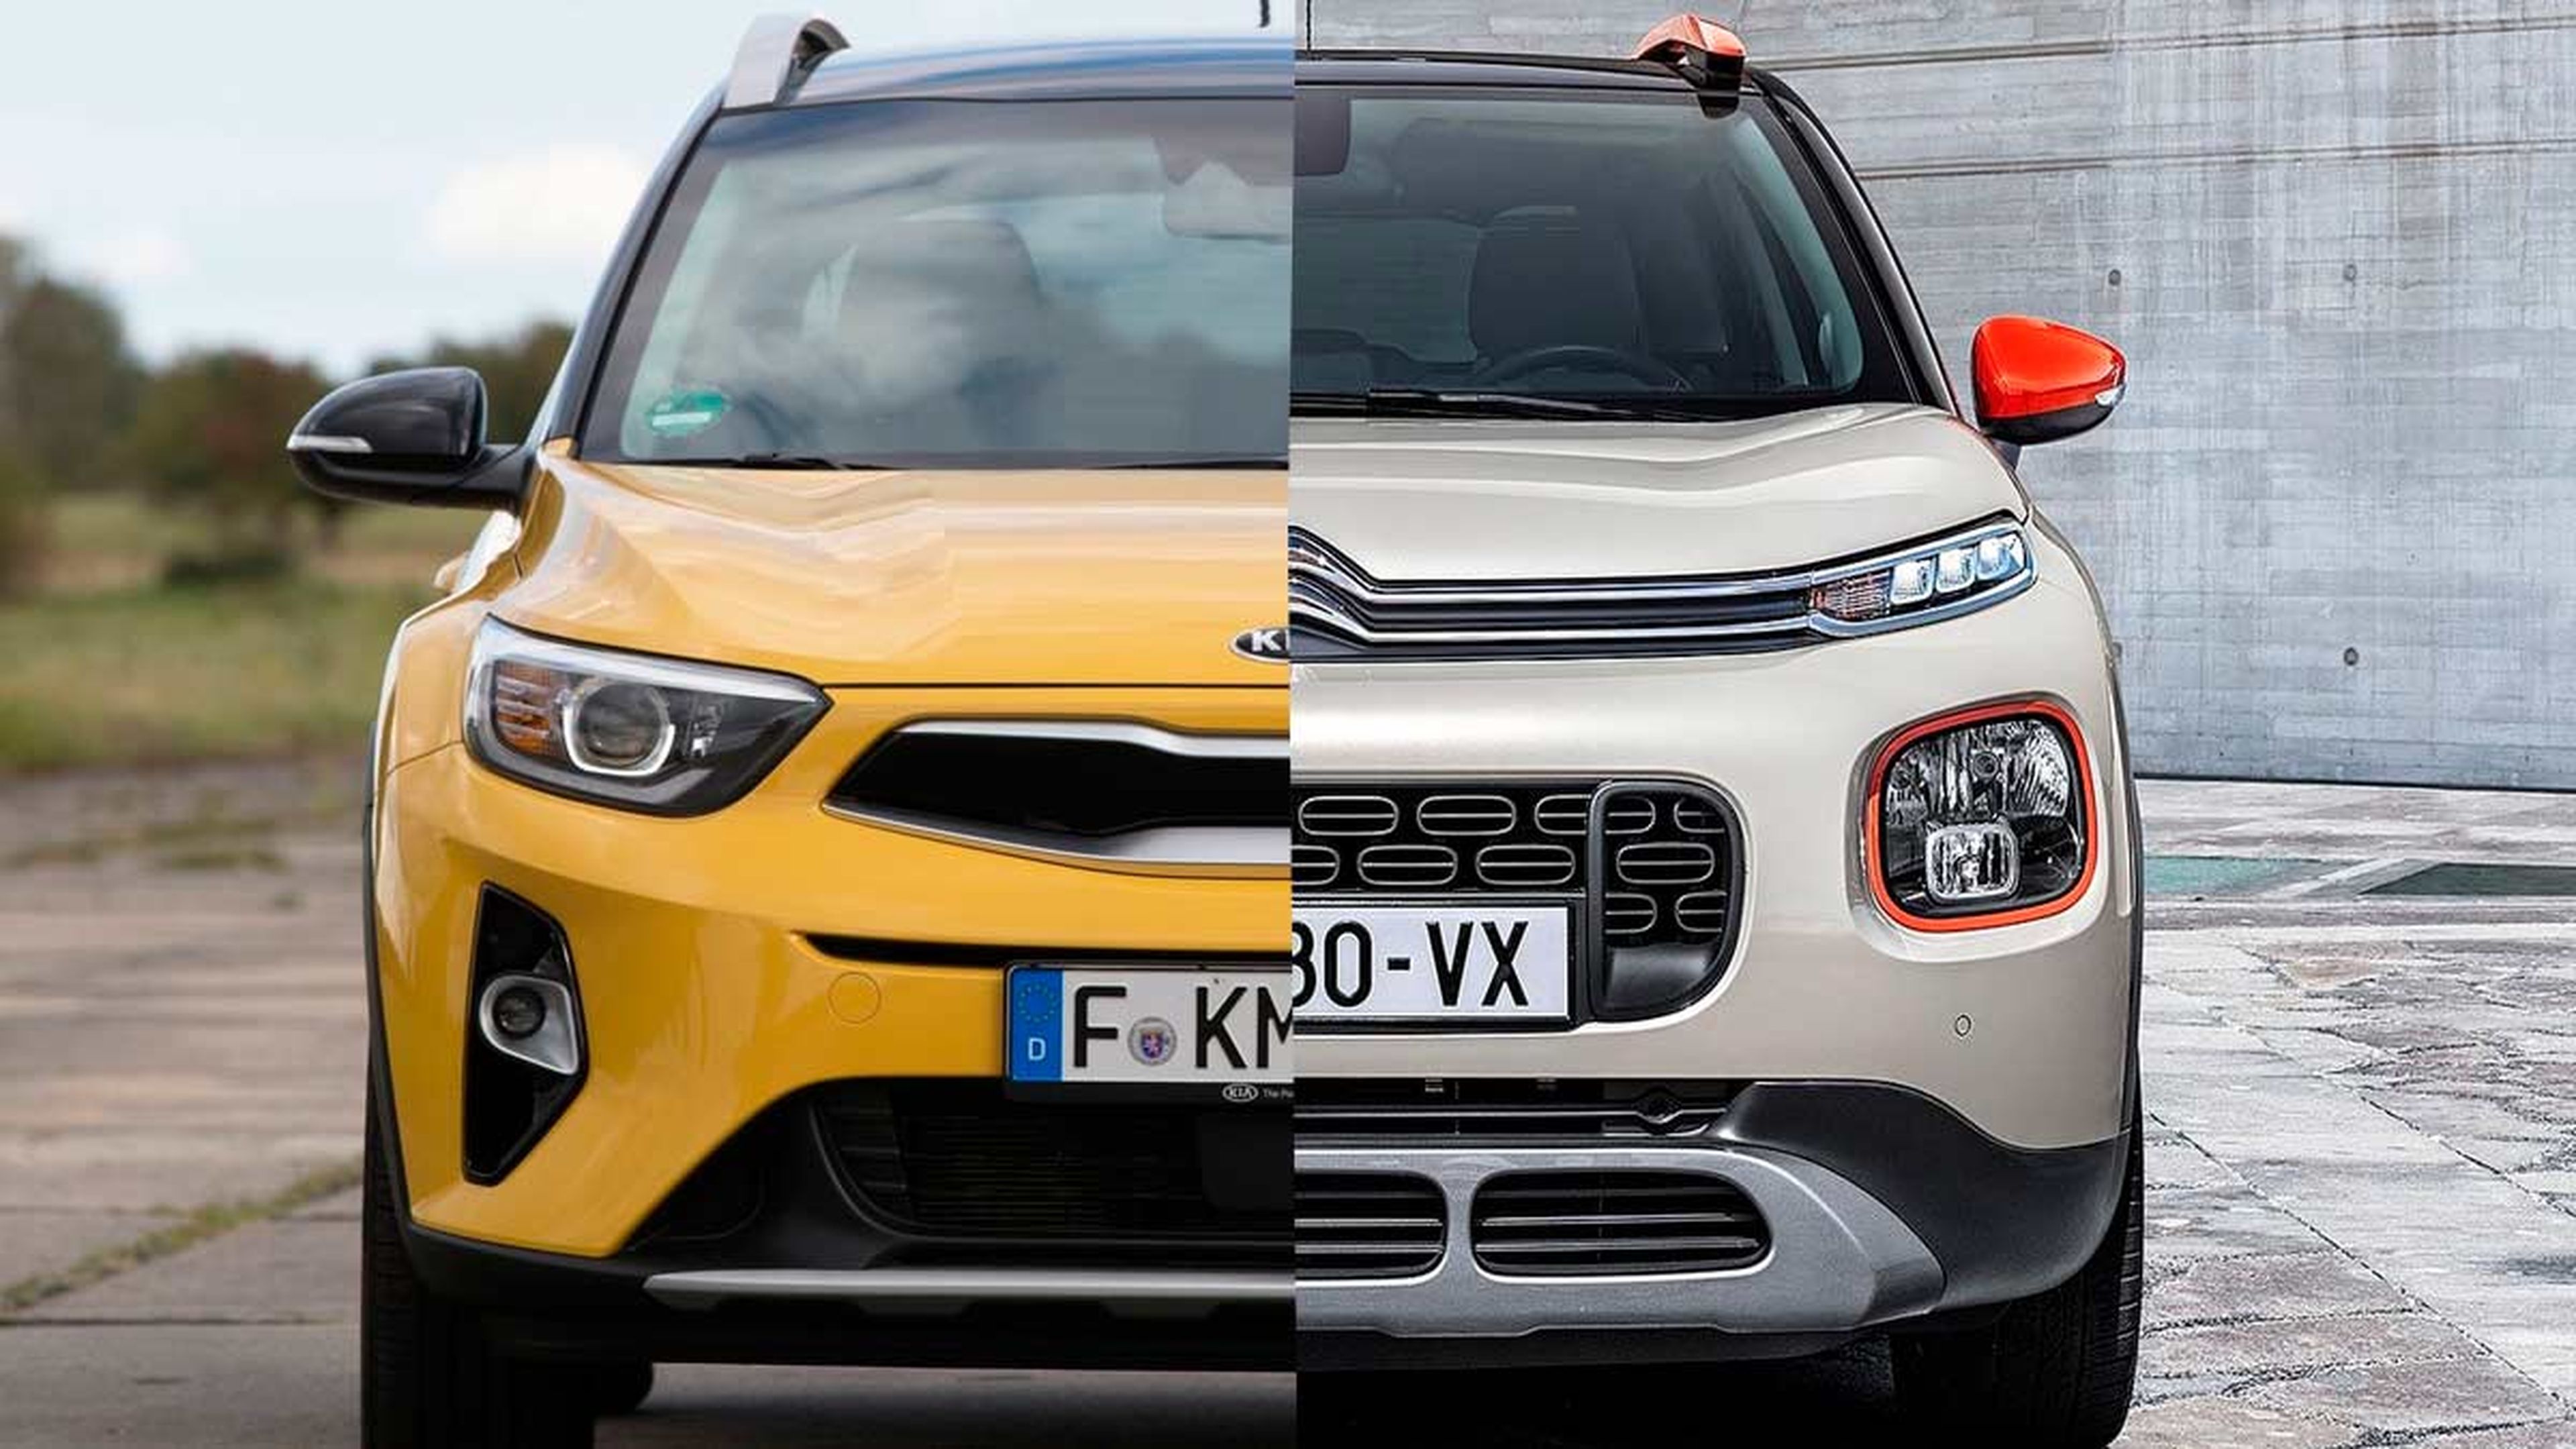 Citroën C3 Aircross vs Kia Stonic